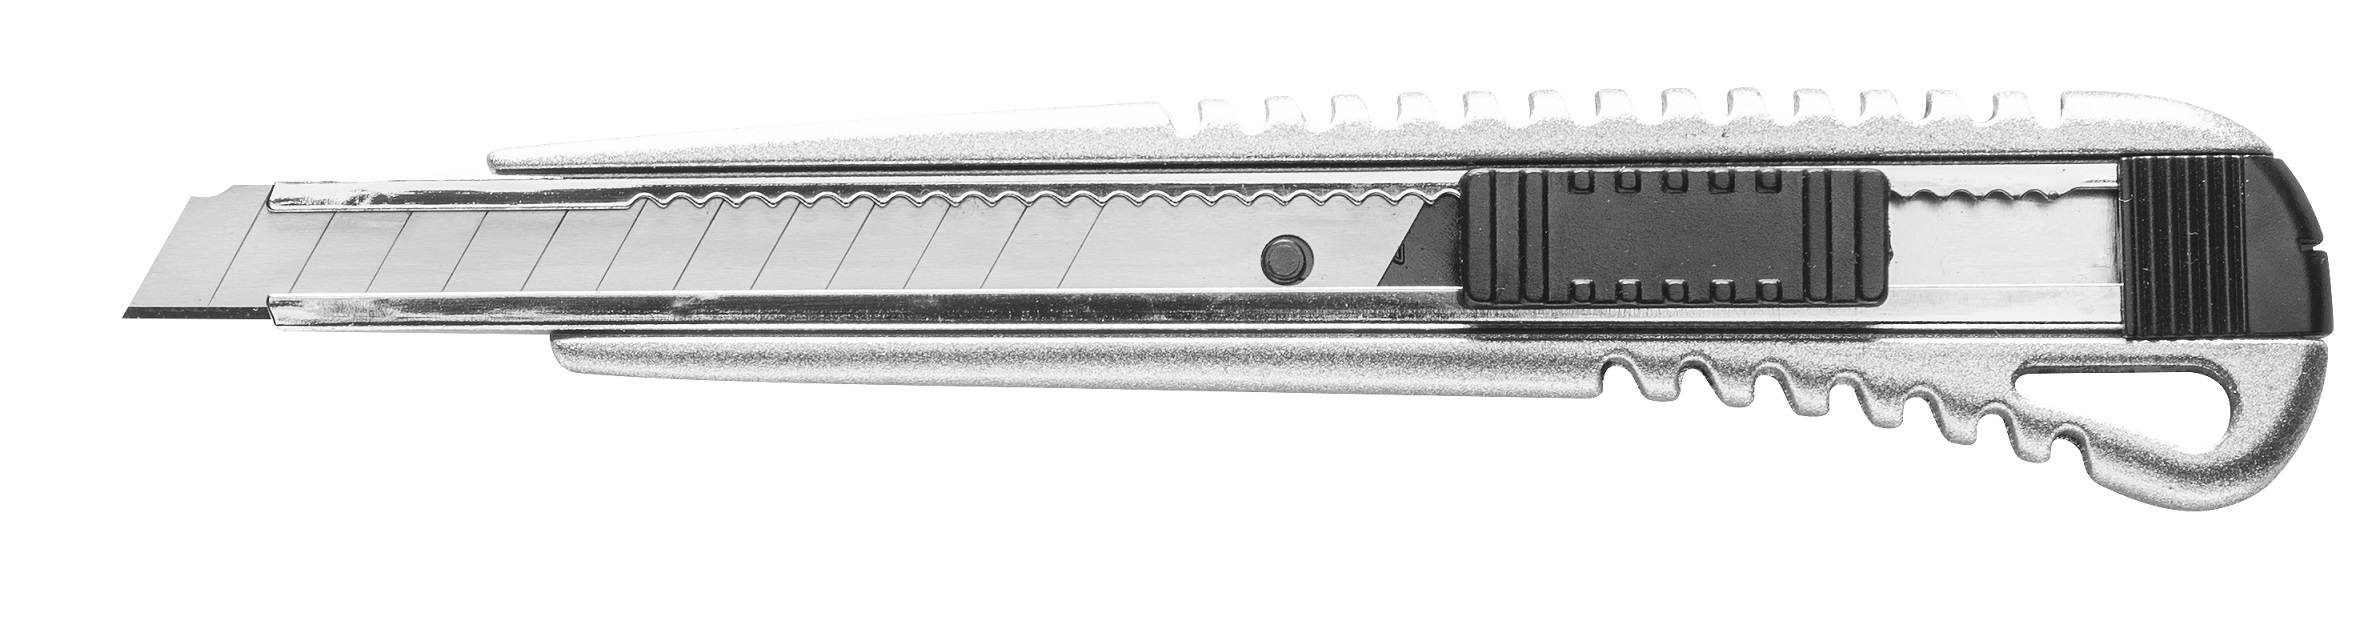 Cutter alu 9mm HARDY K0510-360900